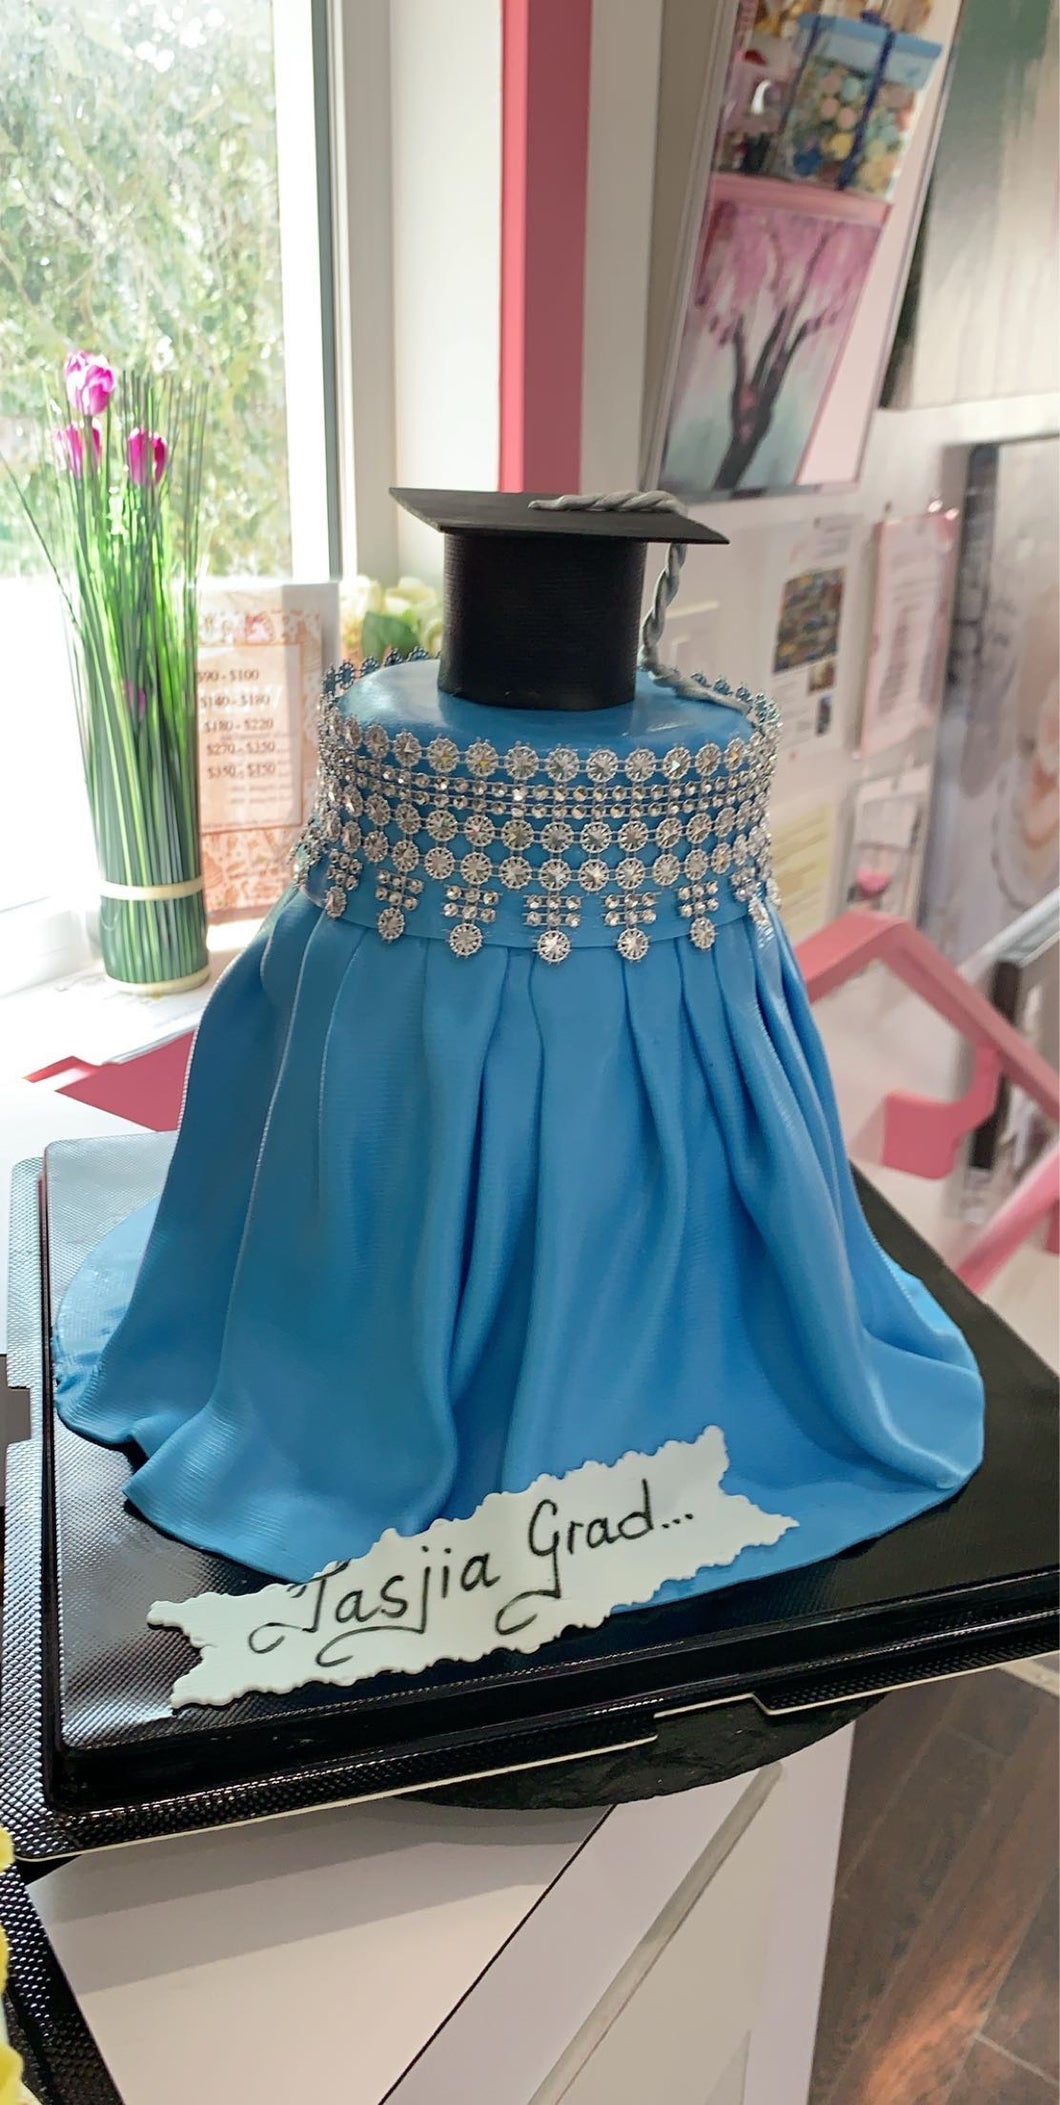 Graduation Custom Cake